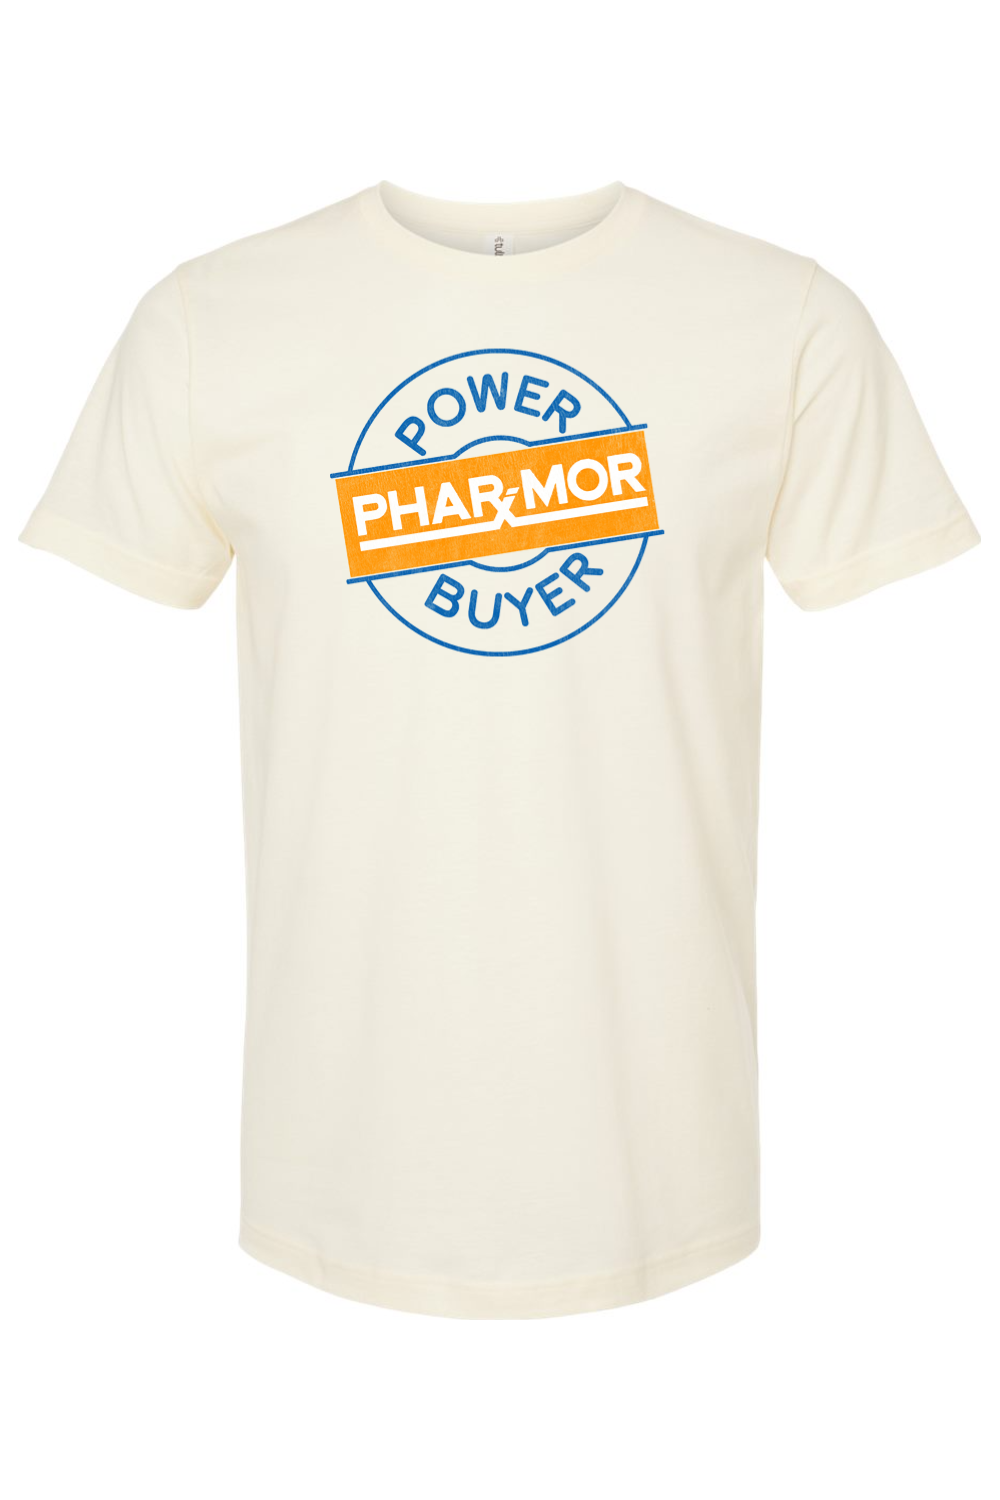 Phar-Mor Power Buyer - Yinzylvania